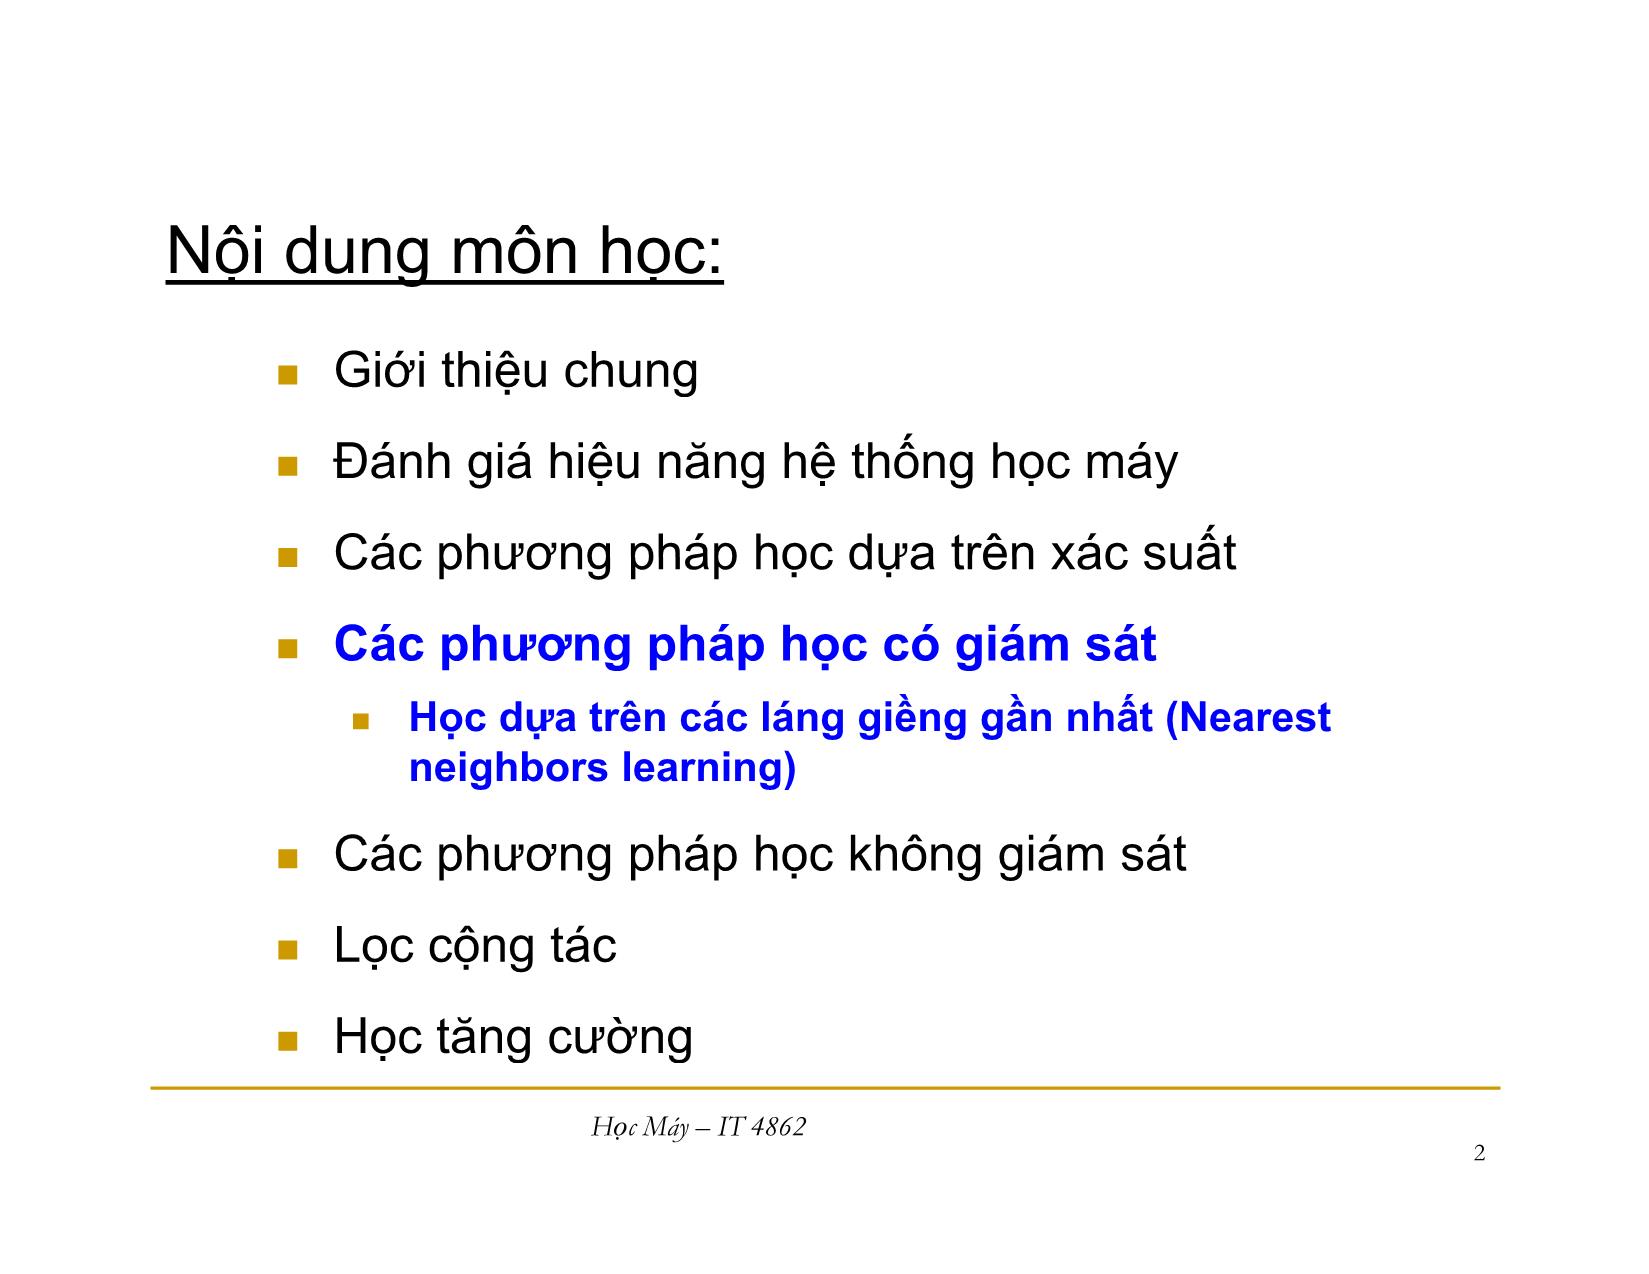 Bài giảng Học máy - Bài 5: Học dựa trên các láng giềng gần nhất - Nguyễn Nhật Quang trang 2